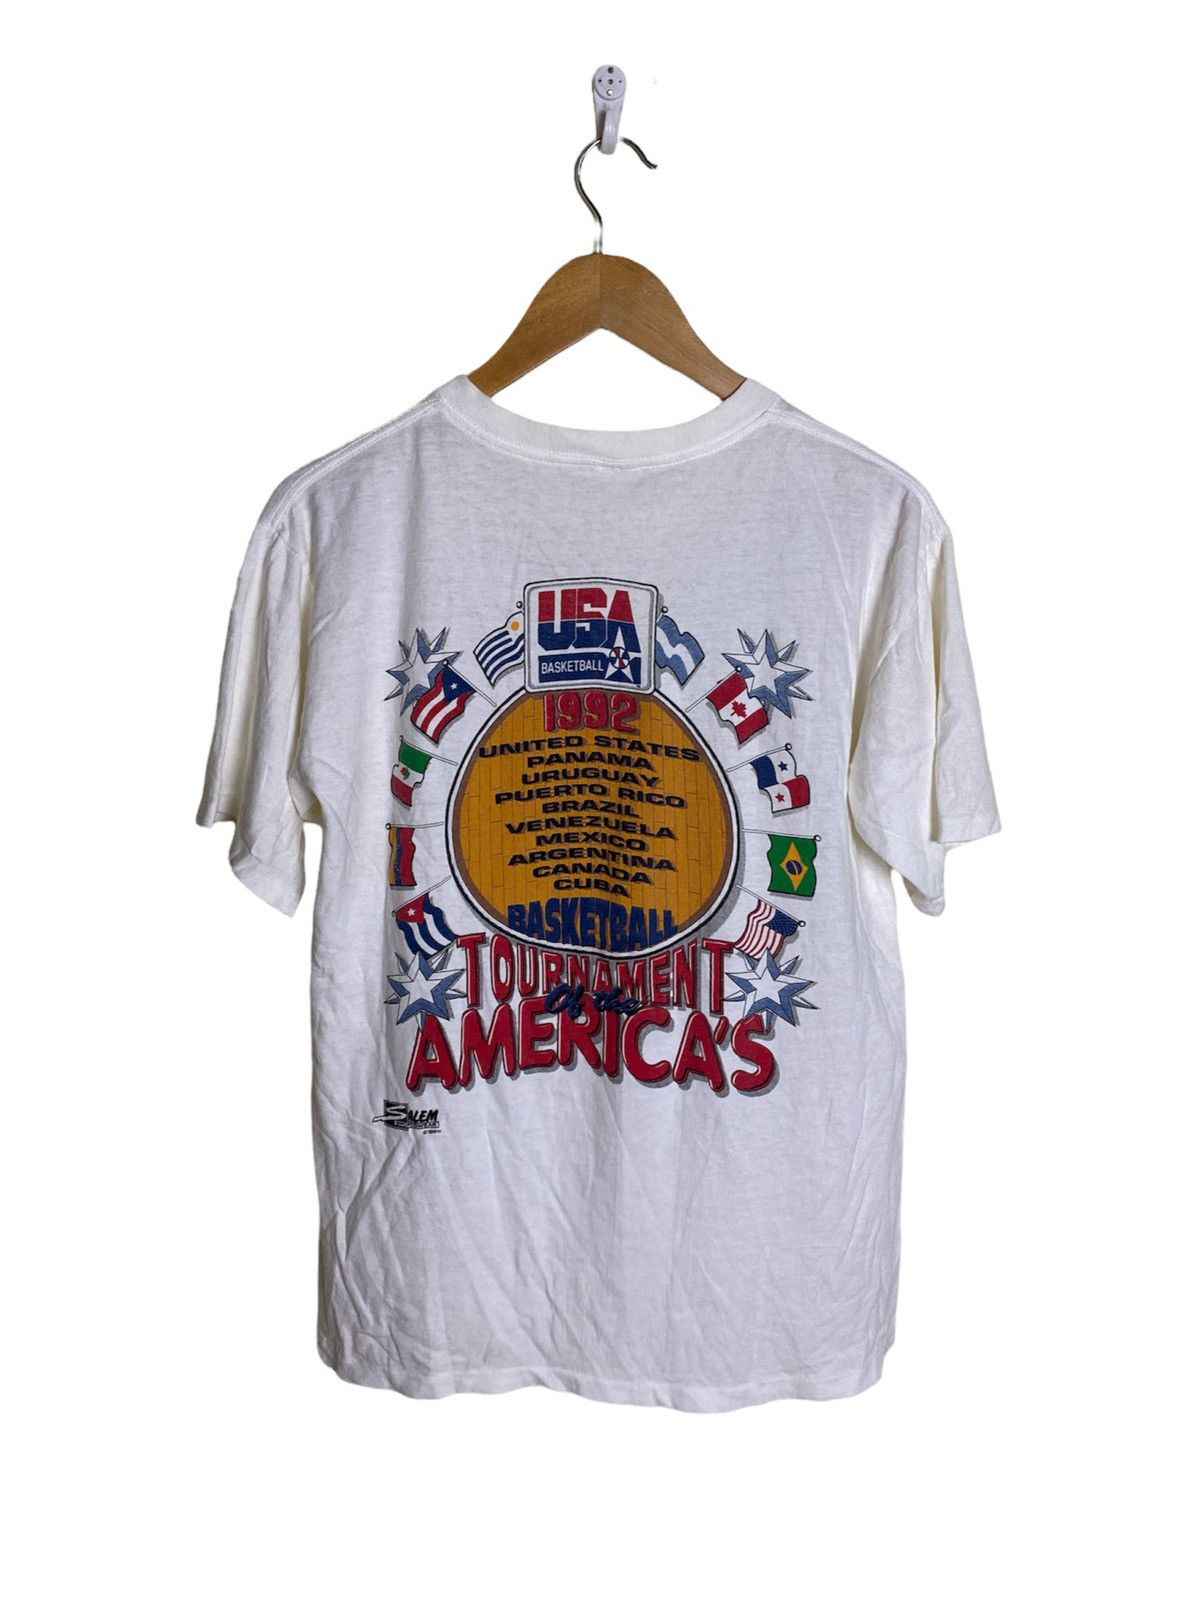 Vintage 1991 USA Dream Team Tshirt - 4